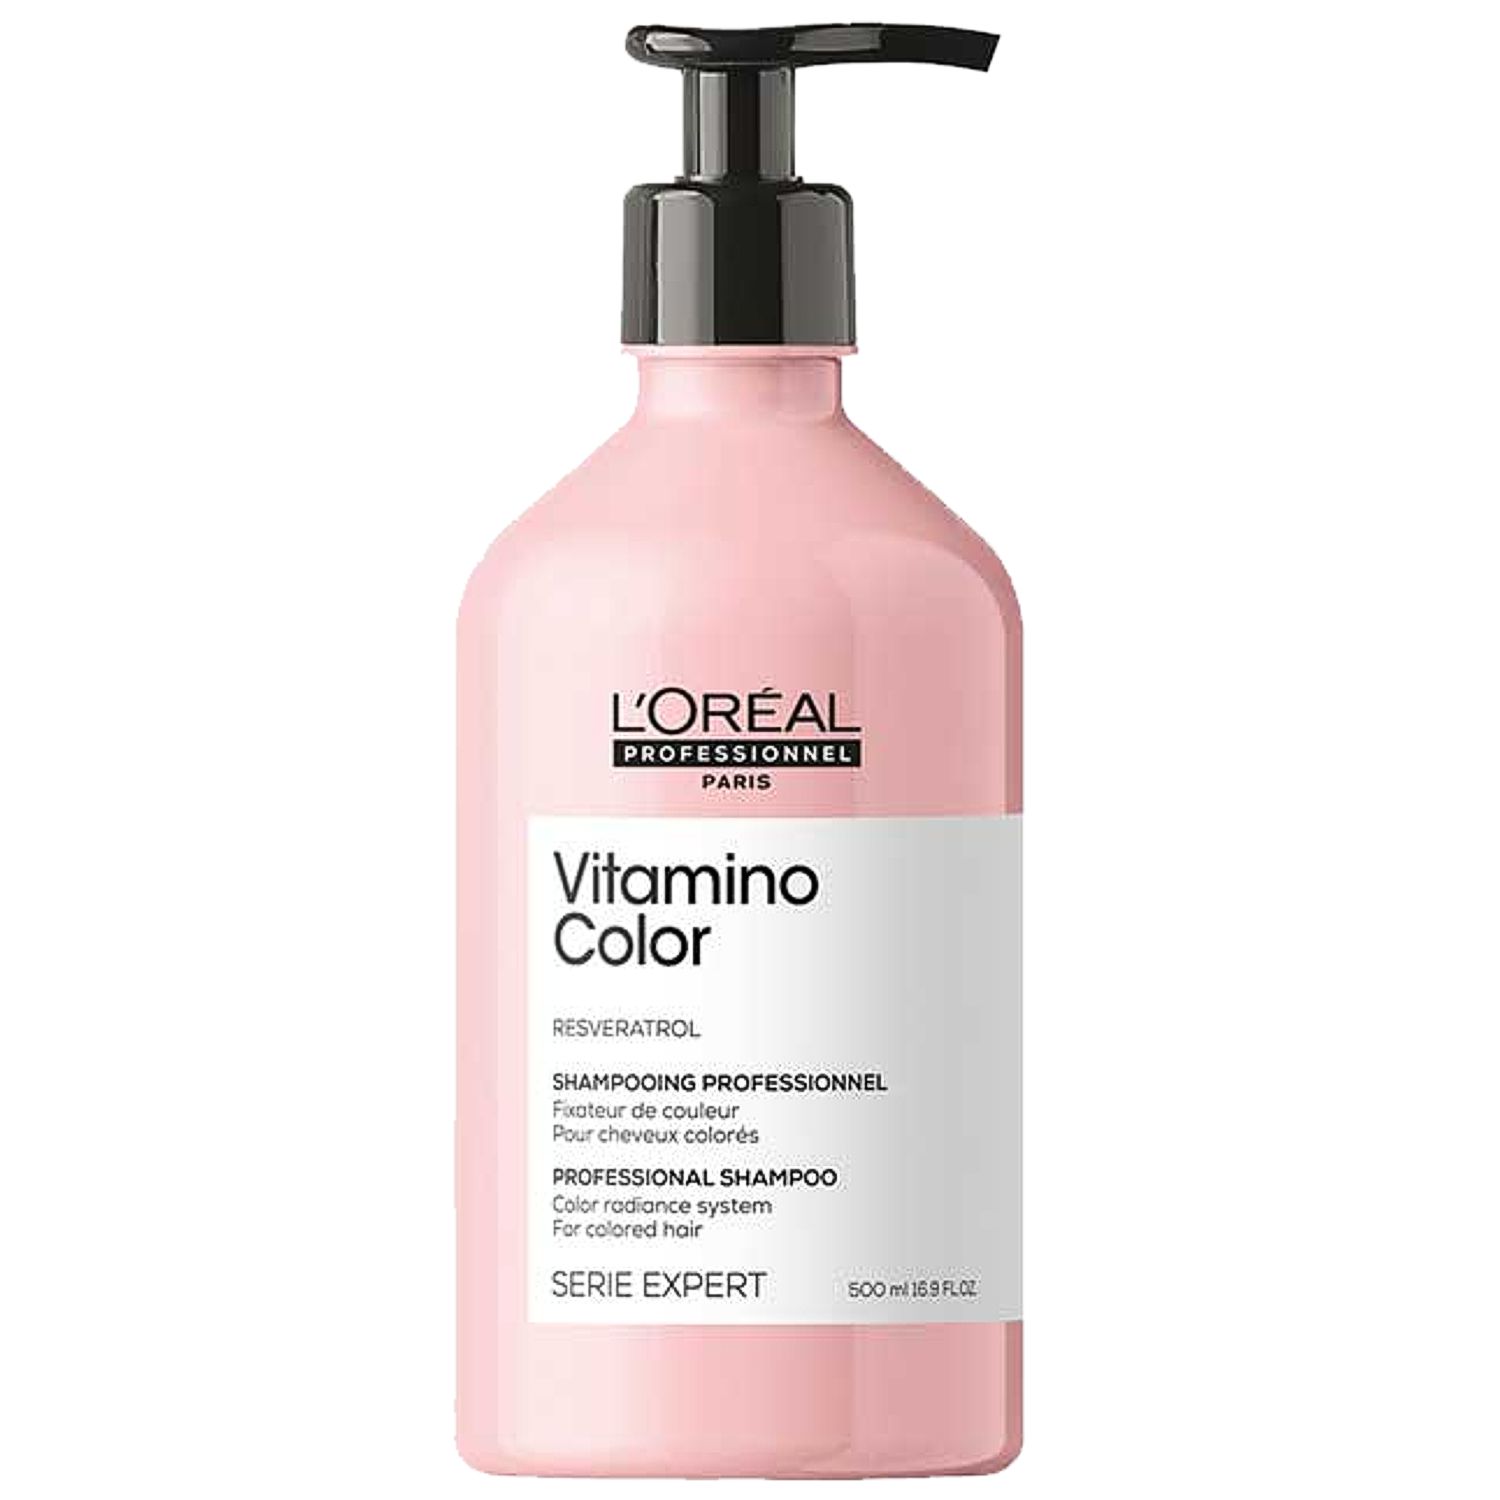 L'ORÉAL Expert VITAMINO COLOR RESVERATROL Professional Shampoo 500 ml